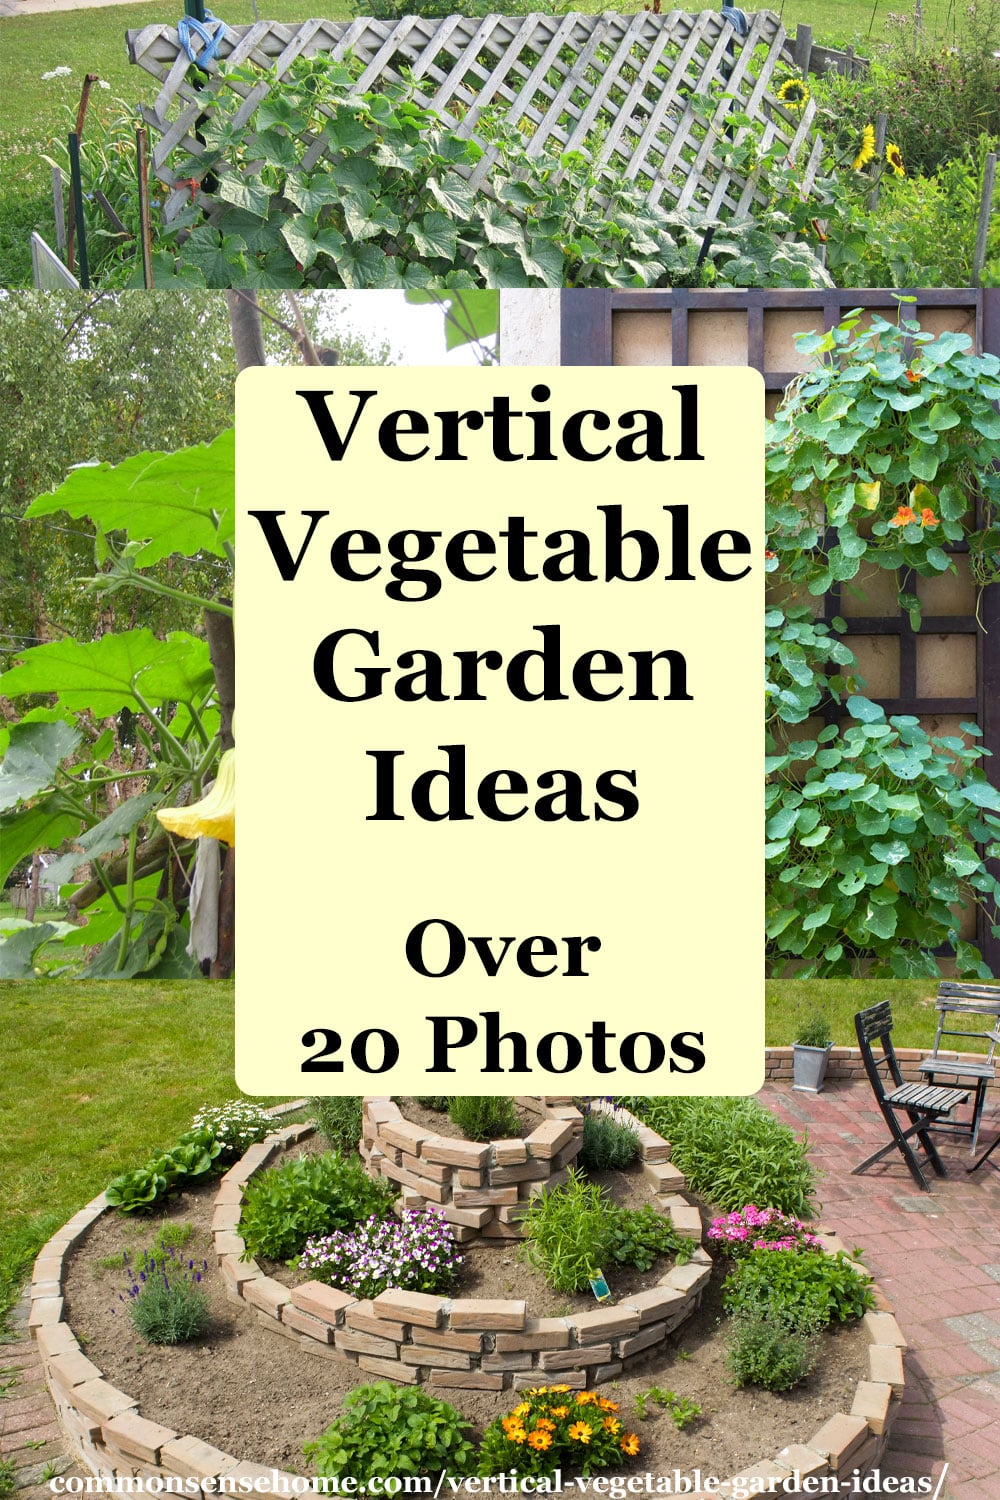 Vertical Vegetable Garden Ideas Over 20 Photos